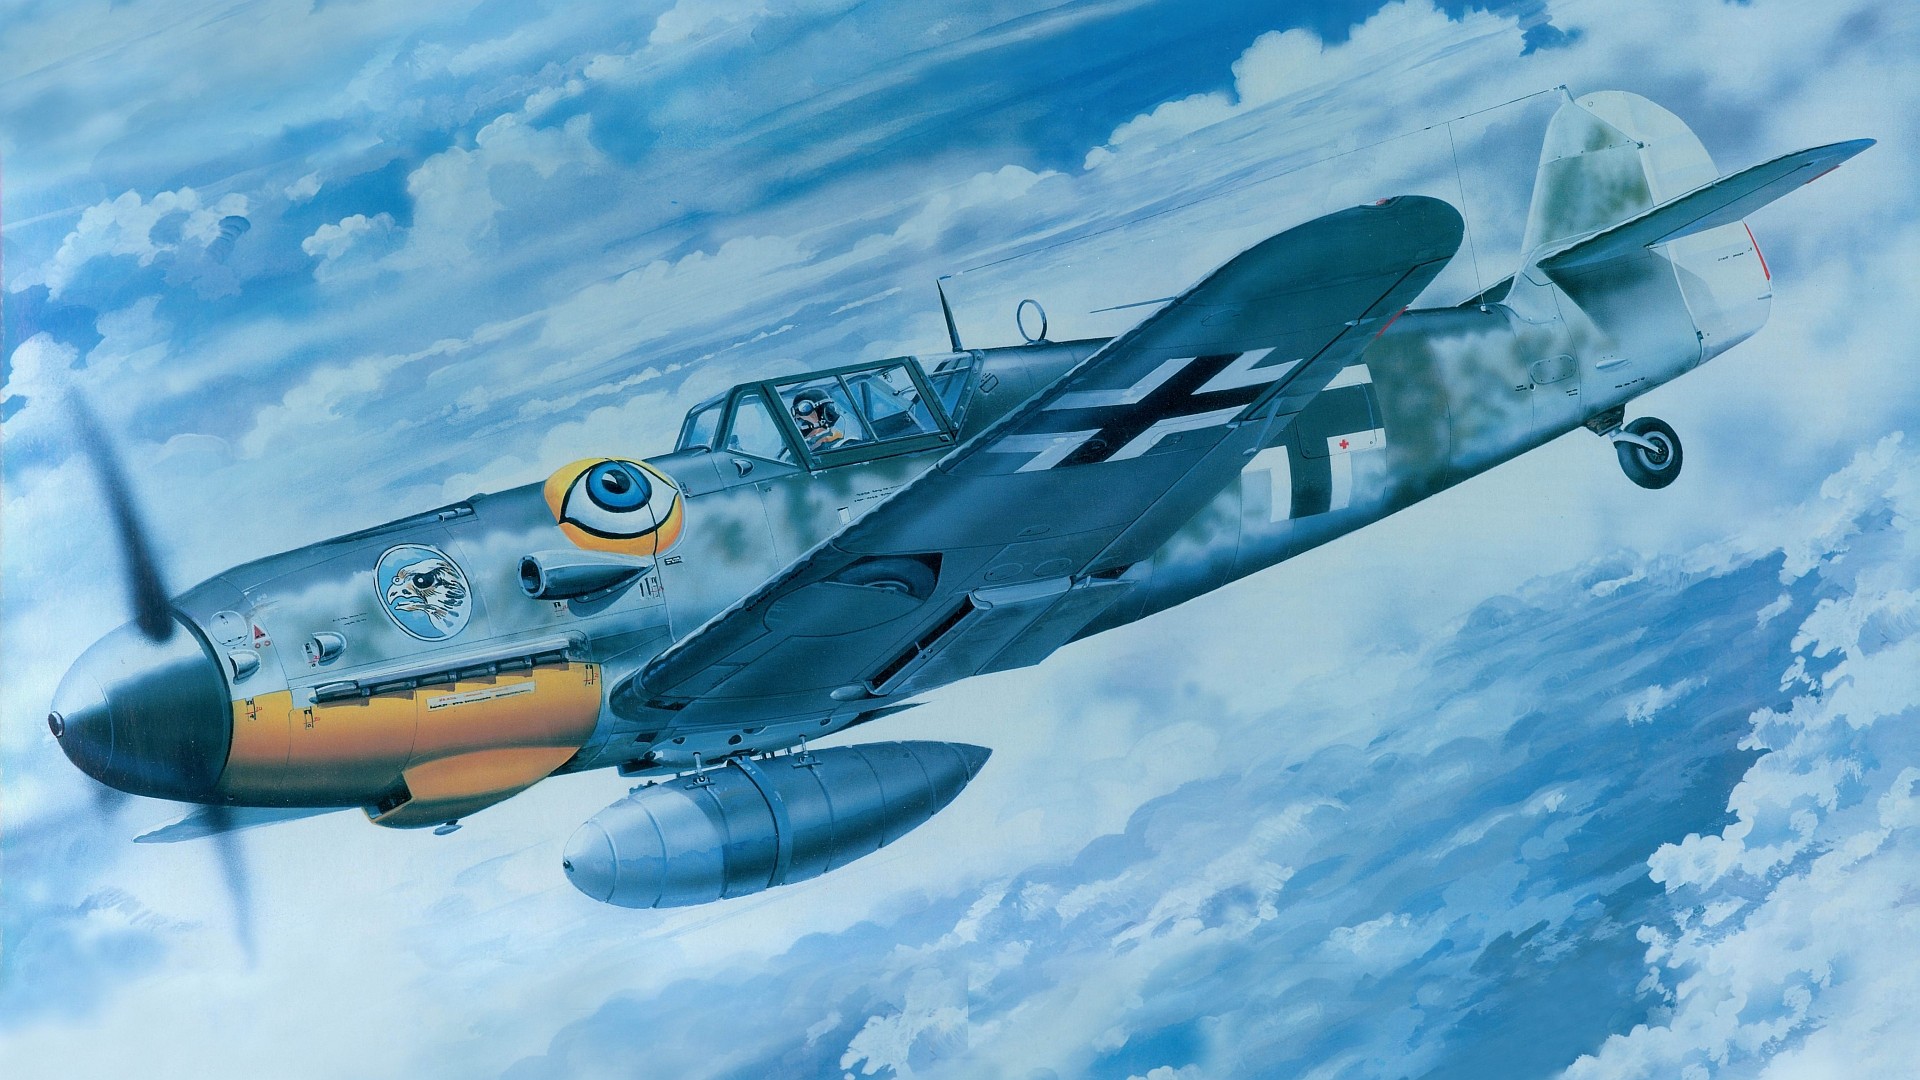 Messerschmitt, Messerschmitt Bf 109, Luftwaffe, Aircraft, Military, Artwork, Military Aircraft, World War II, Germany Wallpaper